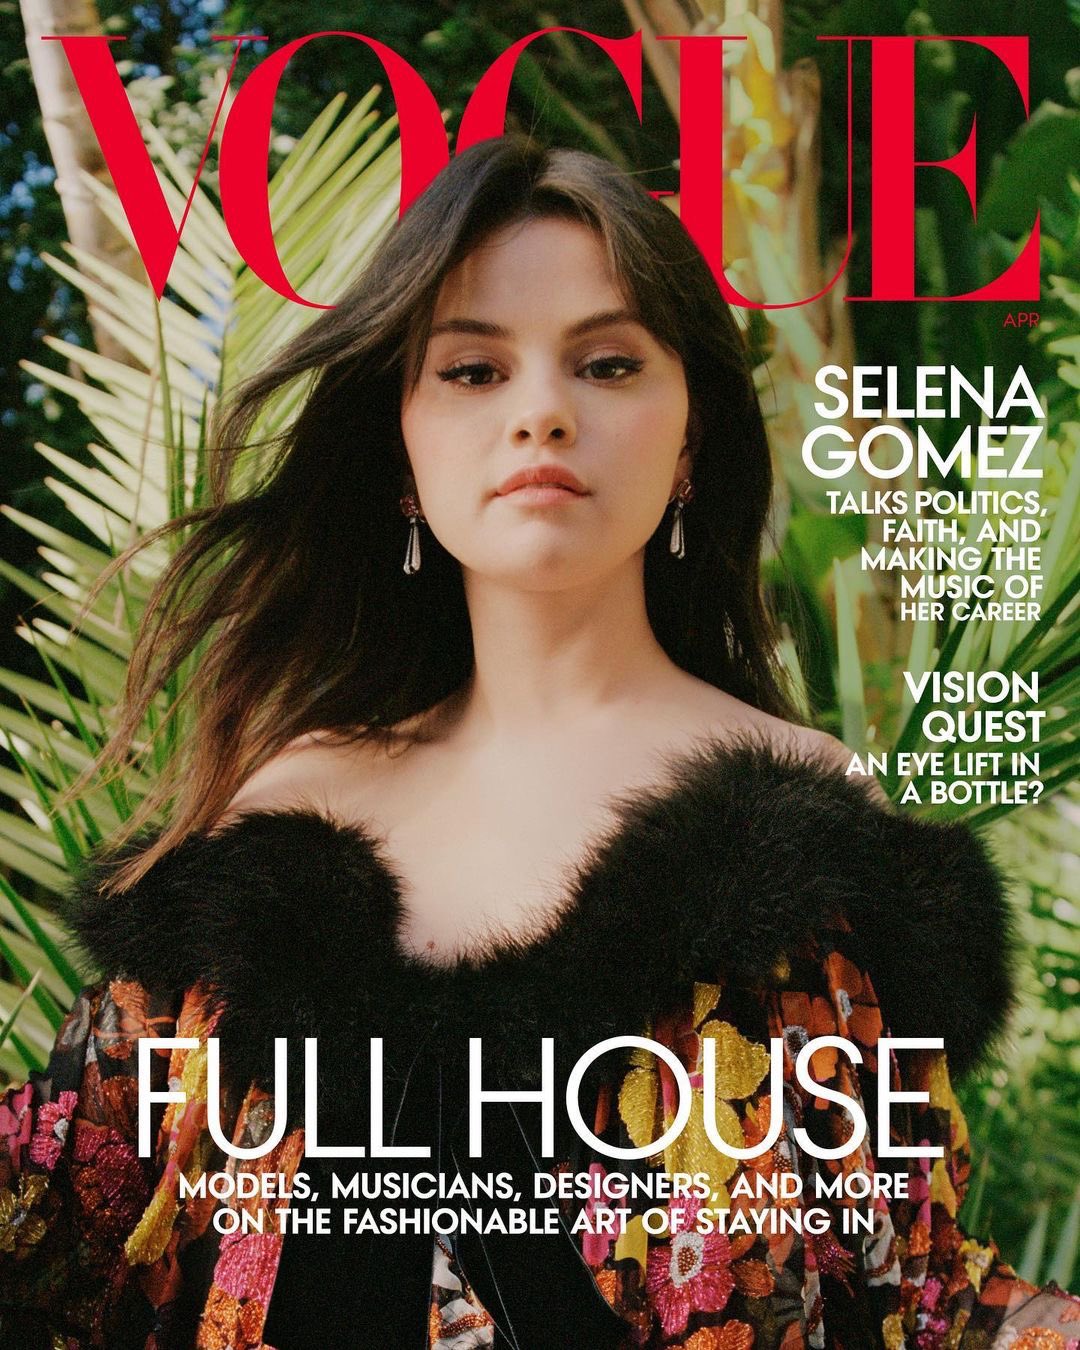 Selena Gomez tuyên bố sẽ ra mắt album cuối cùng của sự nghiệp rồi giải nghệ?